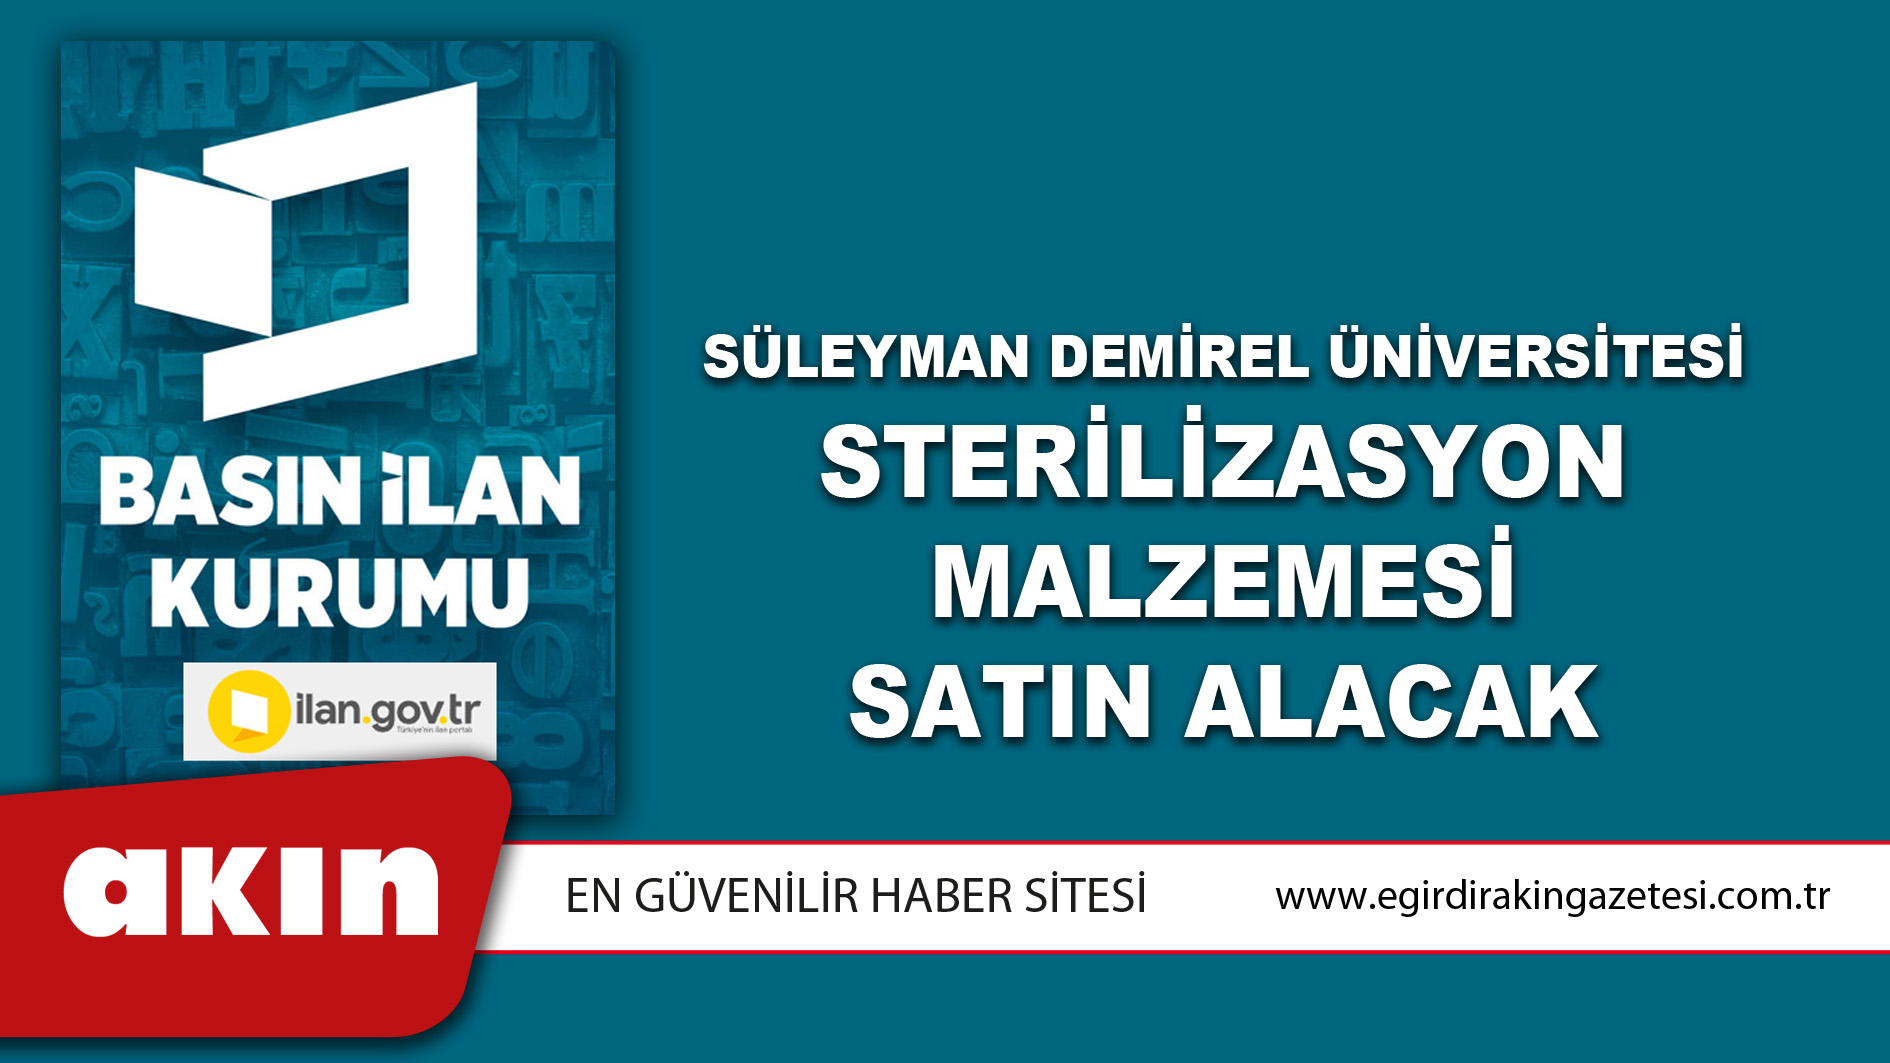 Süleyman Demirel Üniversitesi Sterilizasyon Malzemesi Satın Alacak